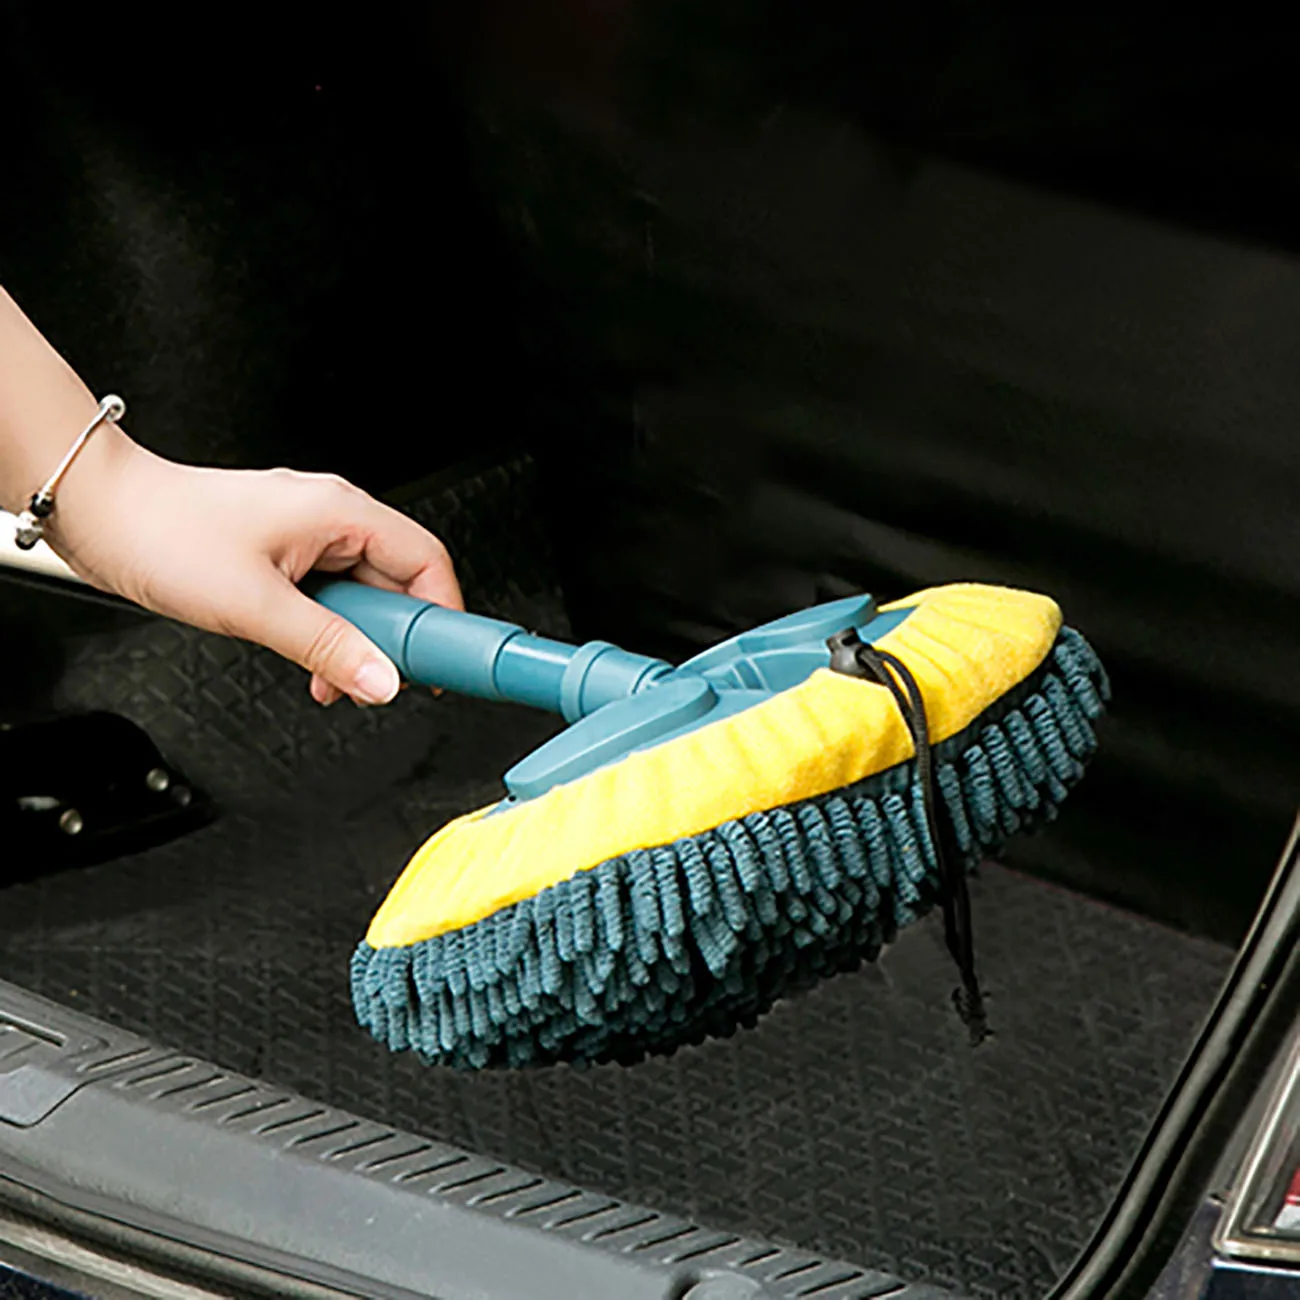 Araba temizlik paspası Araba yıkama fırçası Dönen Teleskopik Paspas Şönil Süpürge Toz Fırçalama Zemin Pencere Temizleme Araçları